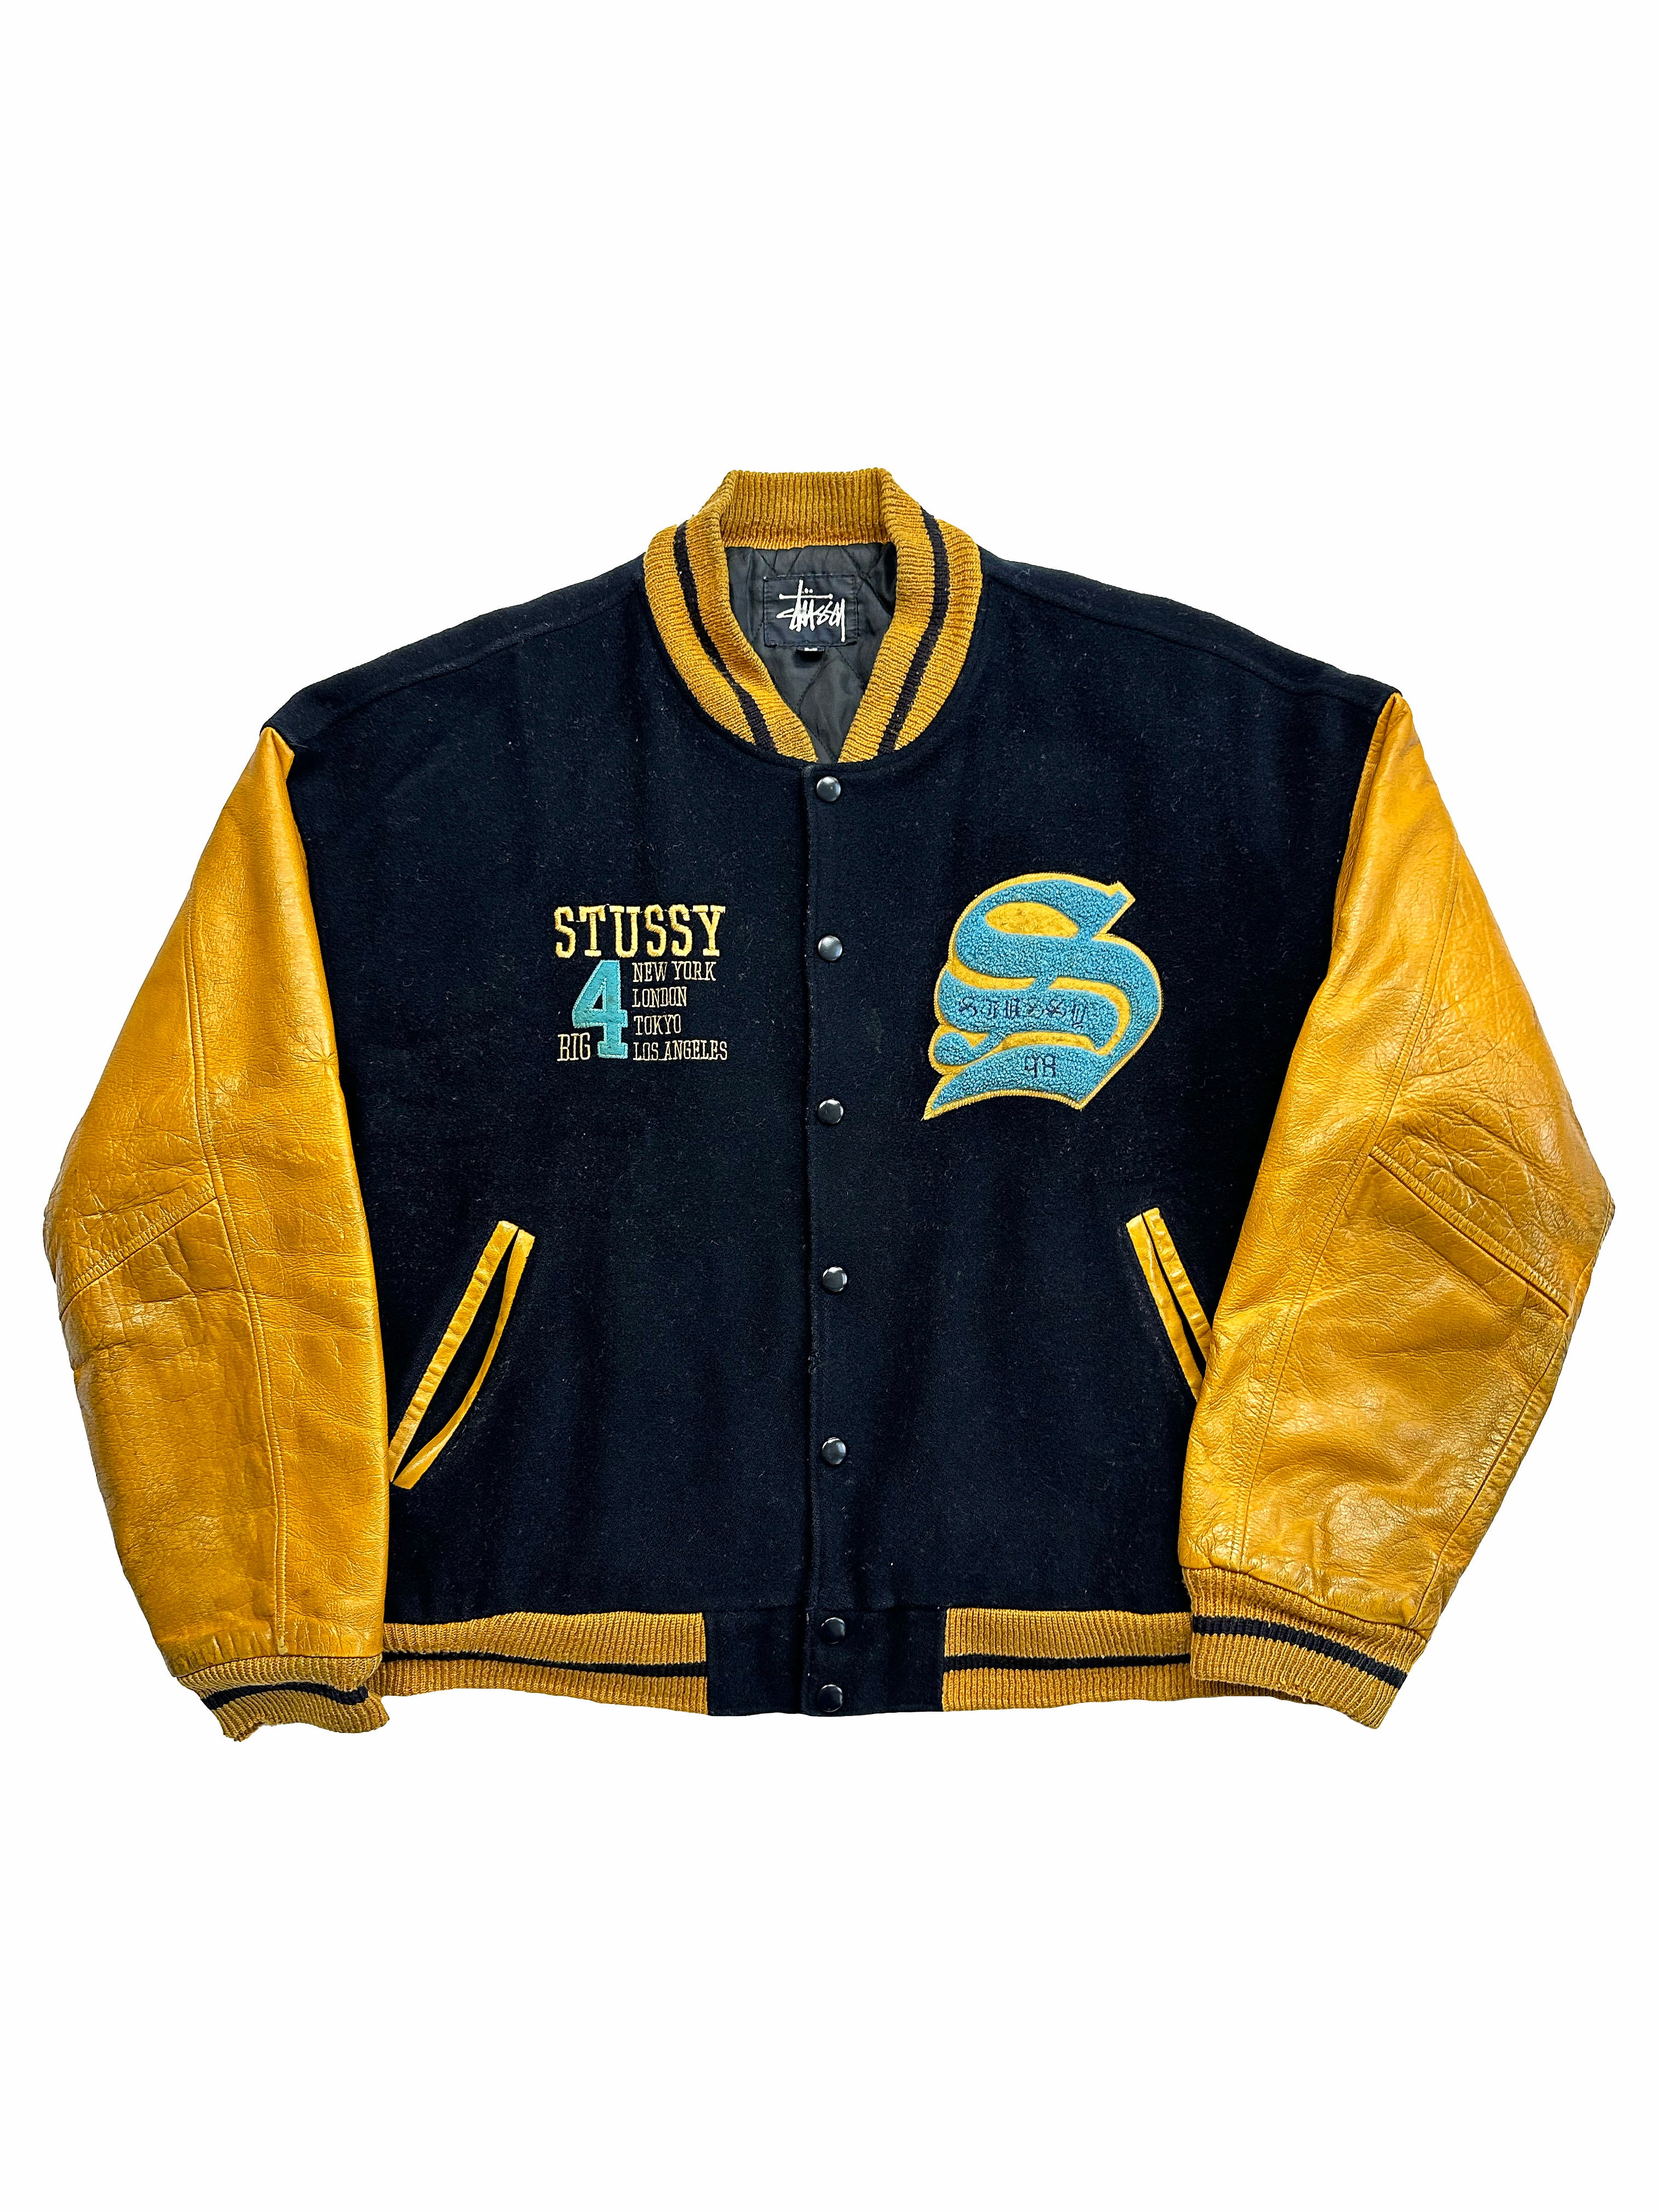 Stussy Big 4 Leather/Wool Varsity Jacket 1998 – Sekkle